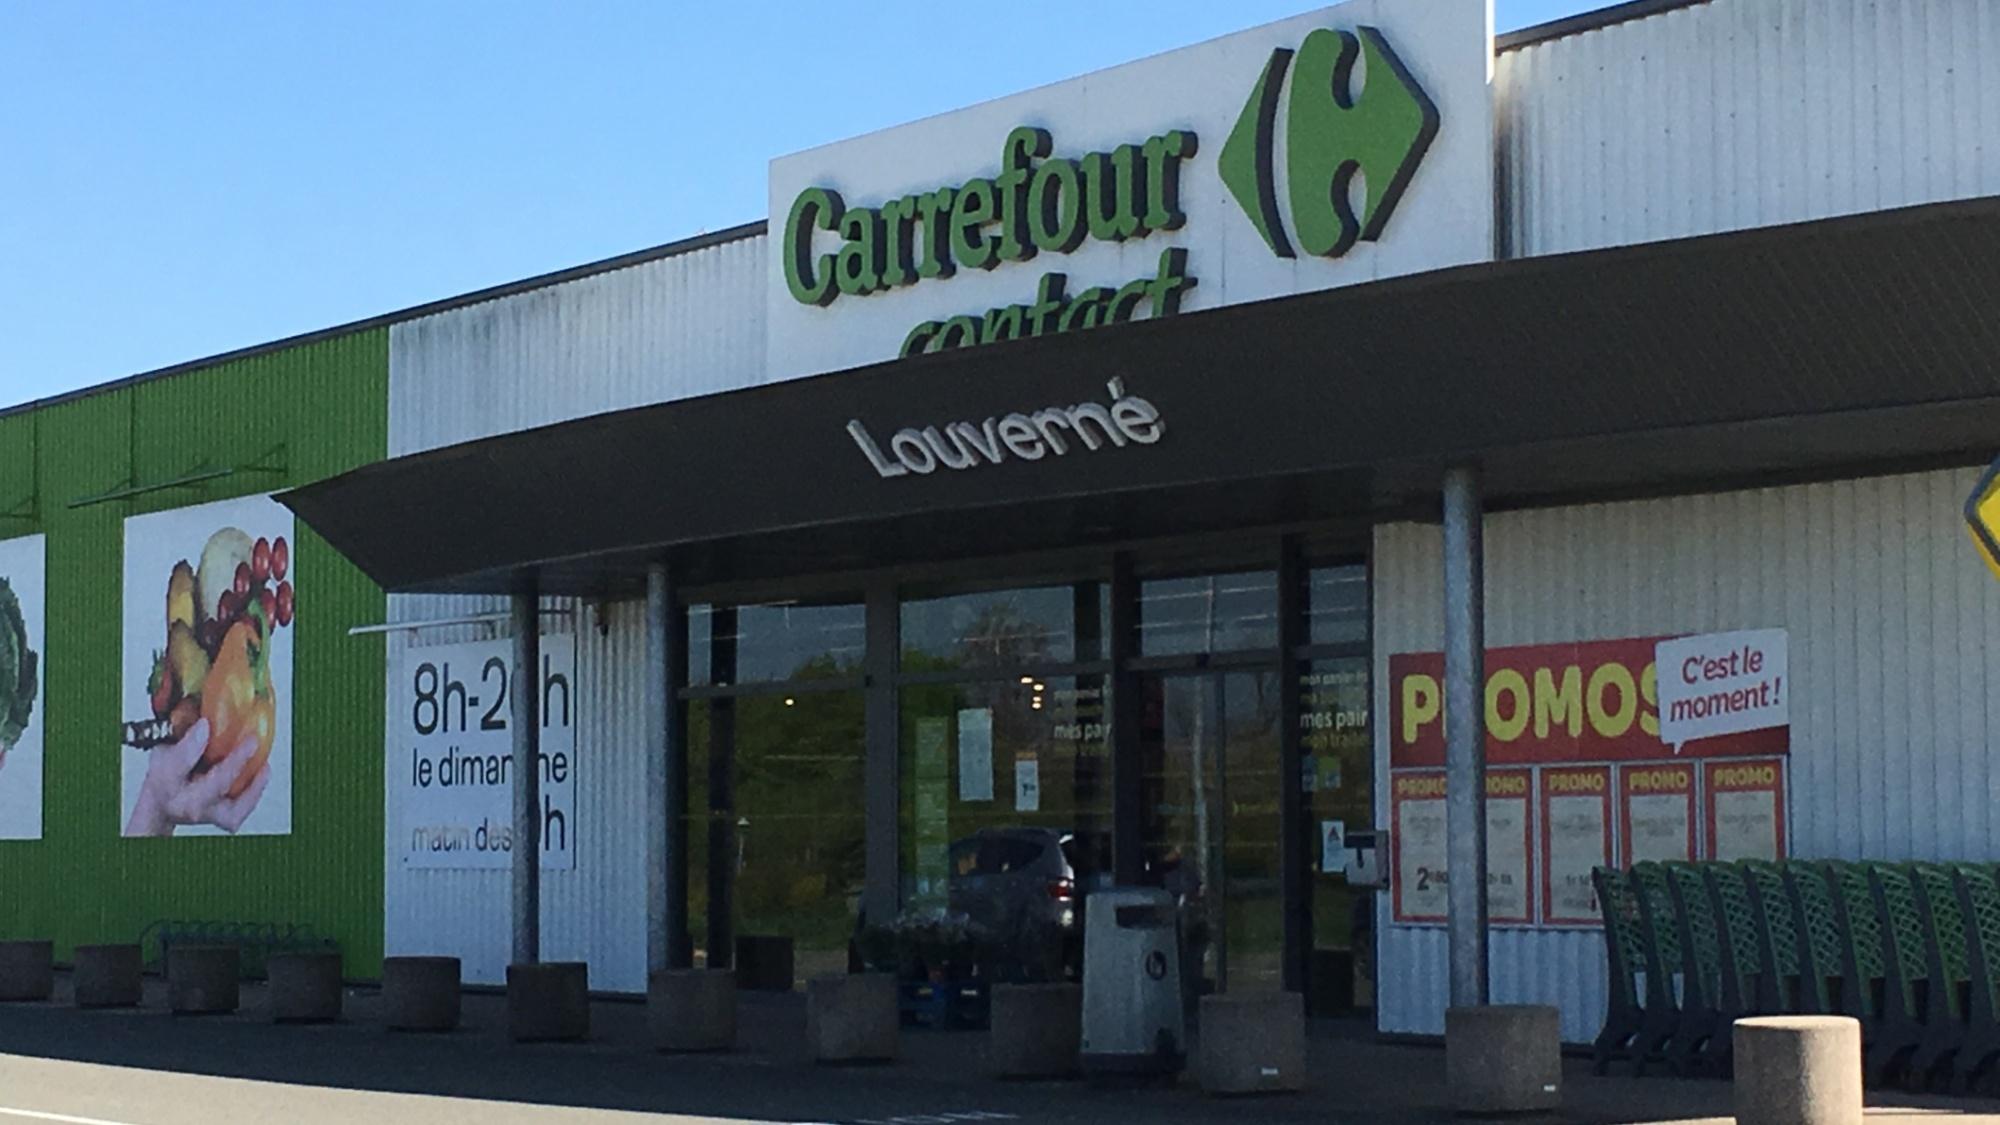 Carrefour Louverné